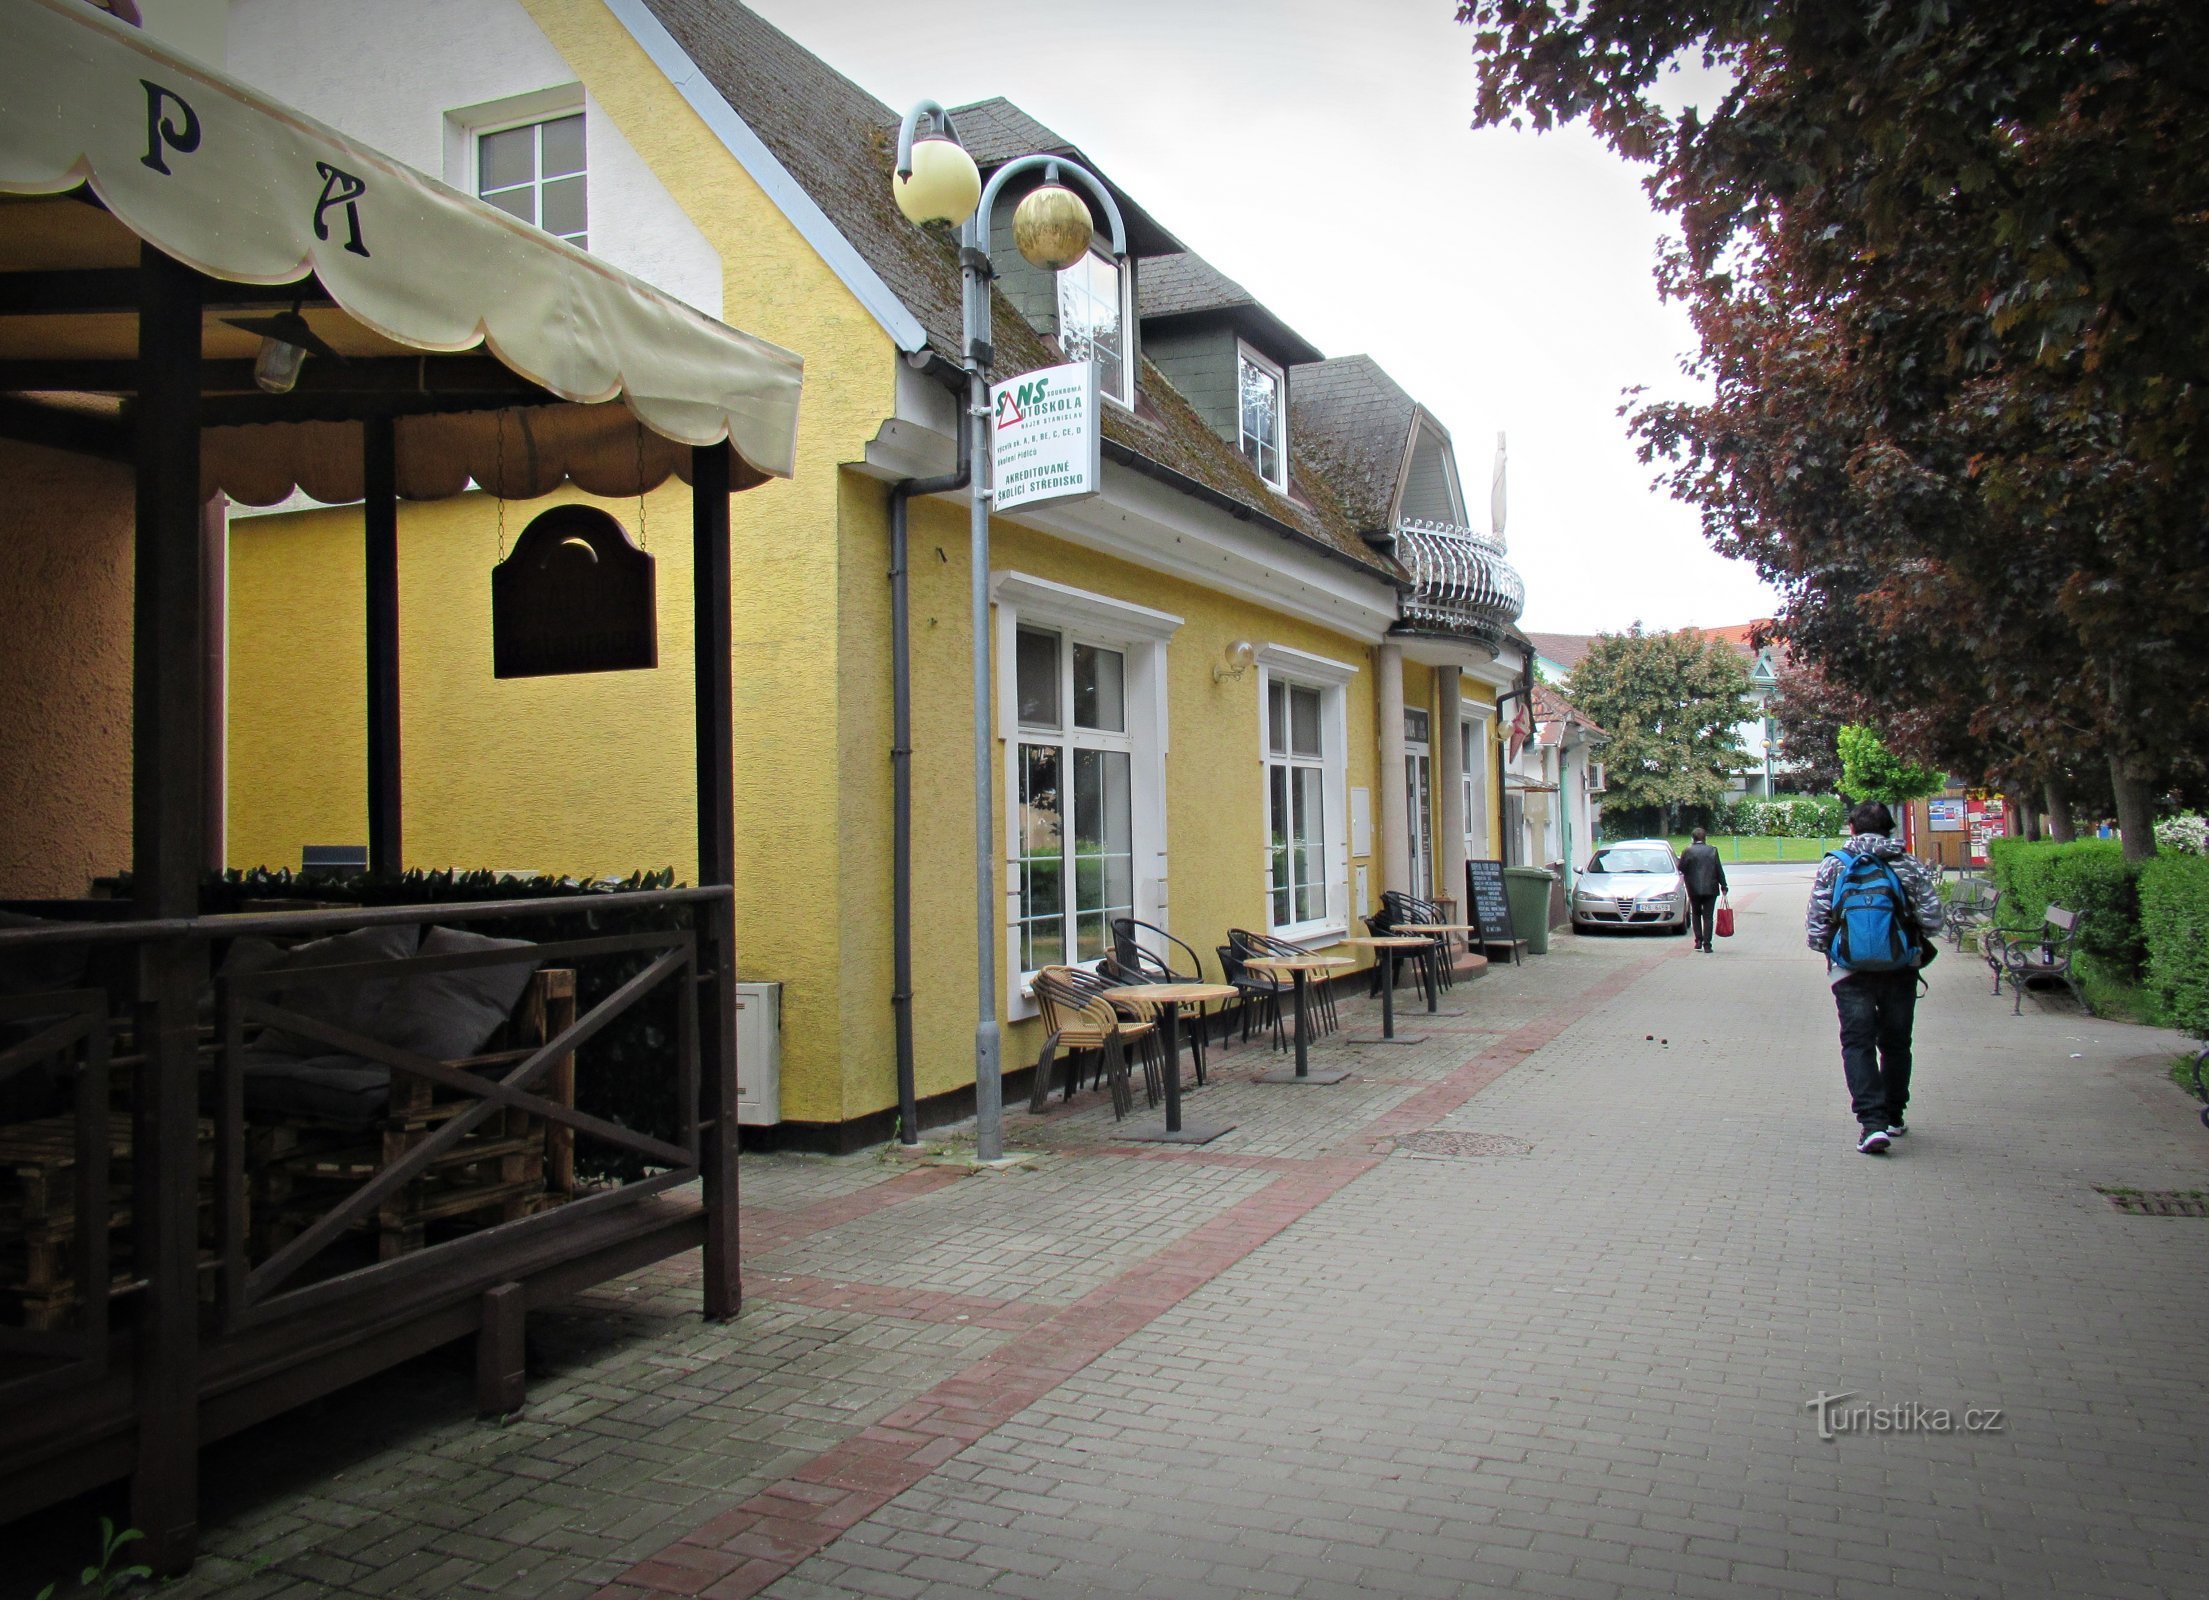 O novo café Lucerna em Bojkovice